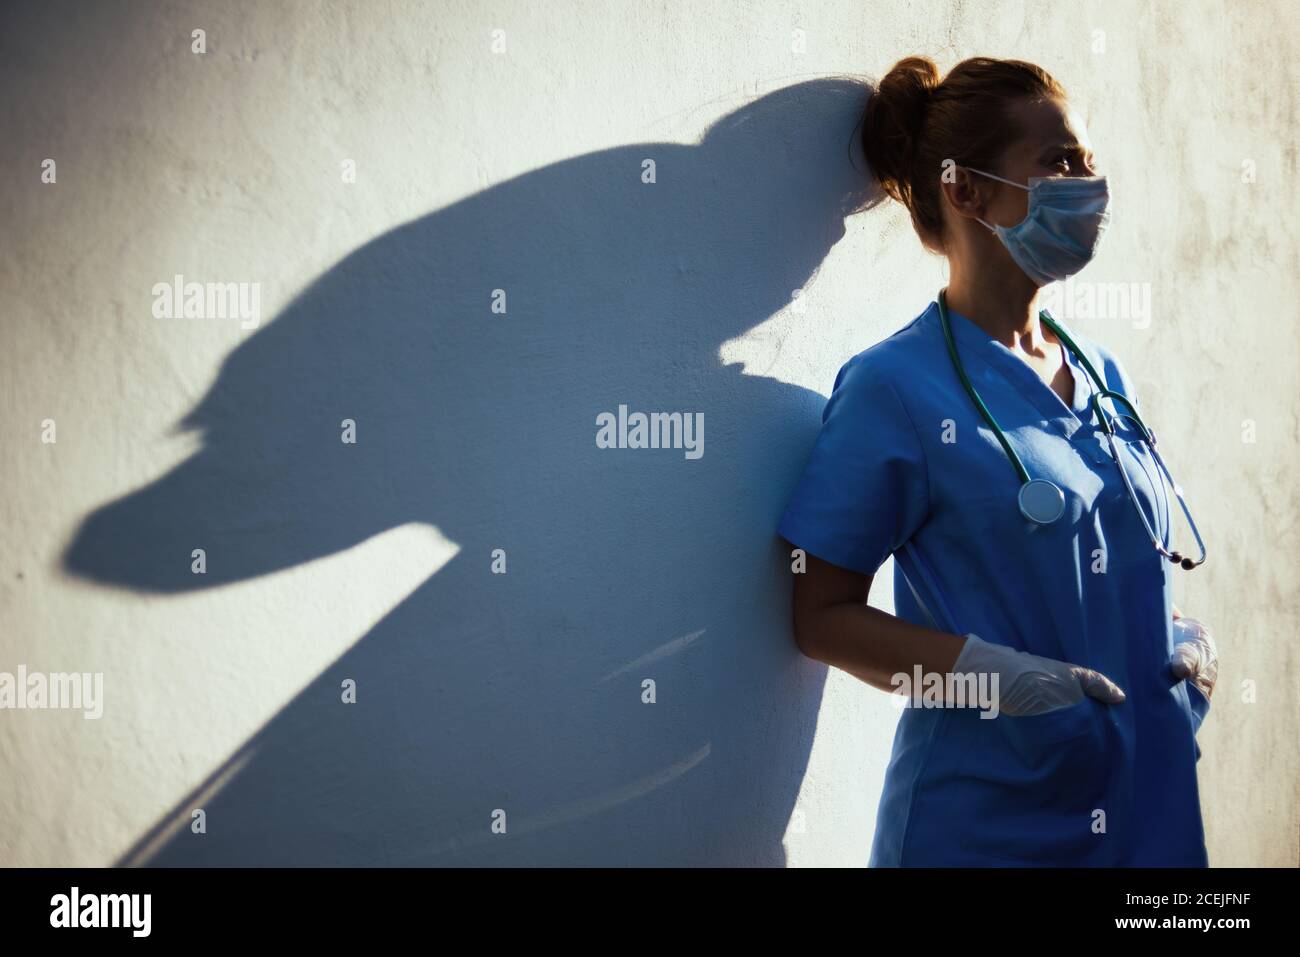 pandemia di coronavirus. donna medica moderna stanca in scrub con stetoscopio, maschera medica e guanti di gomma all'aperto in città vicino a muro. Foto Stock